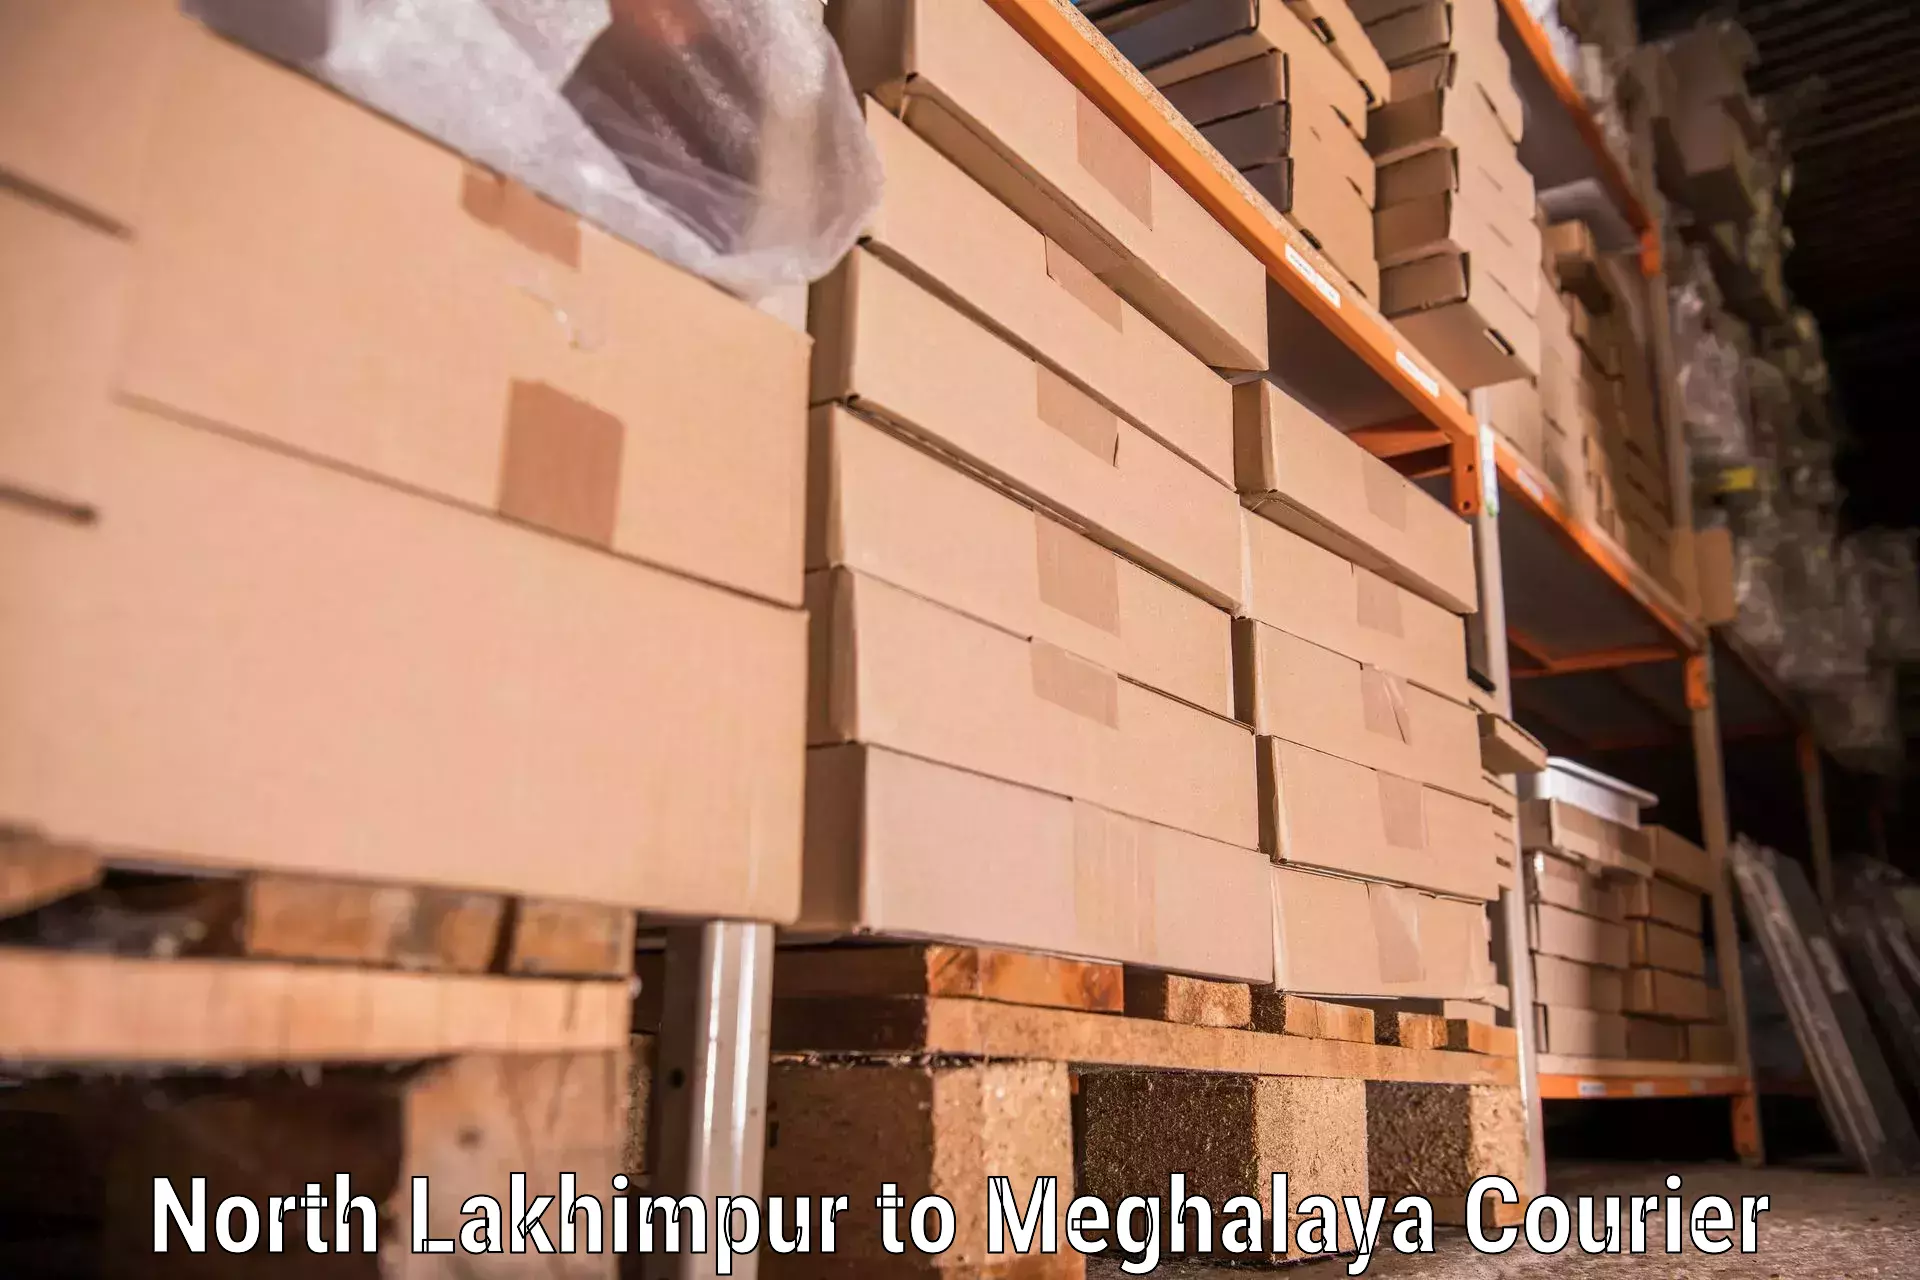 Furniture moving service North Lakhimpur to Meghalaya